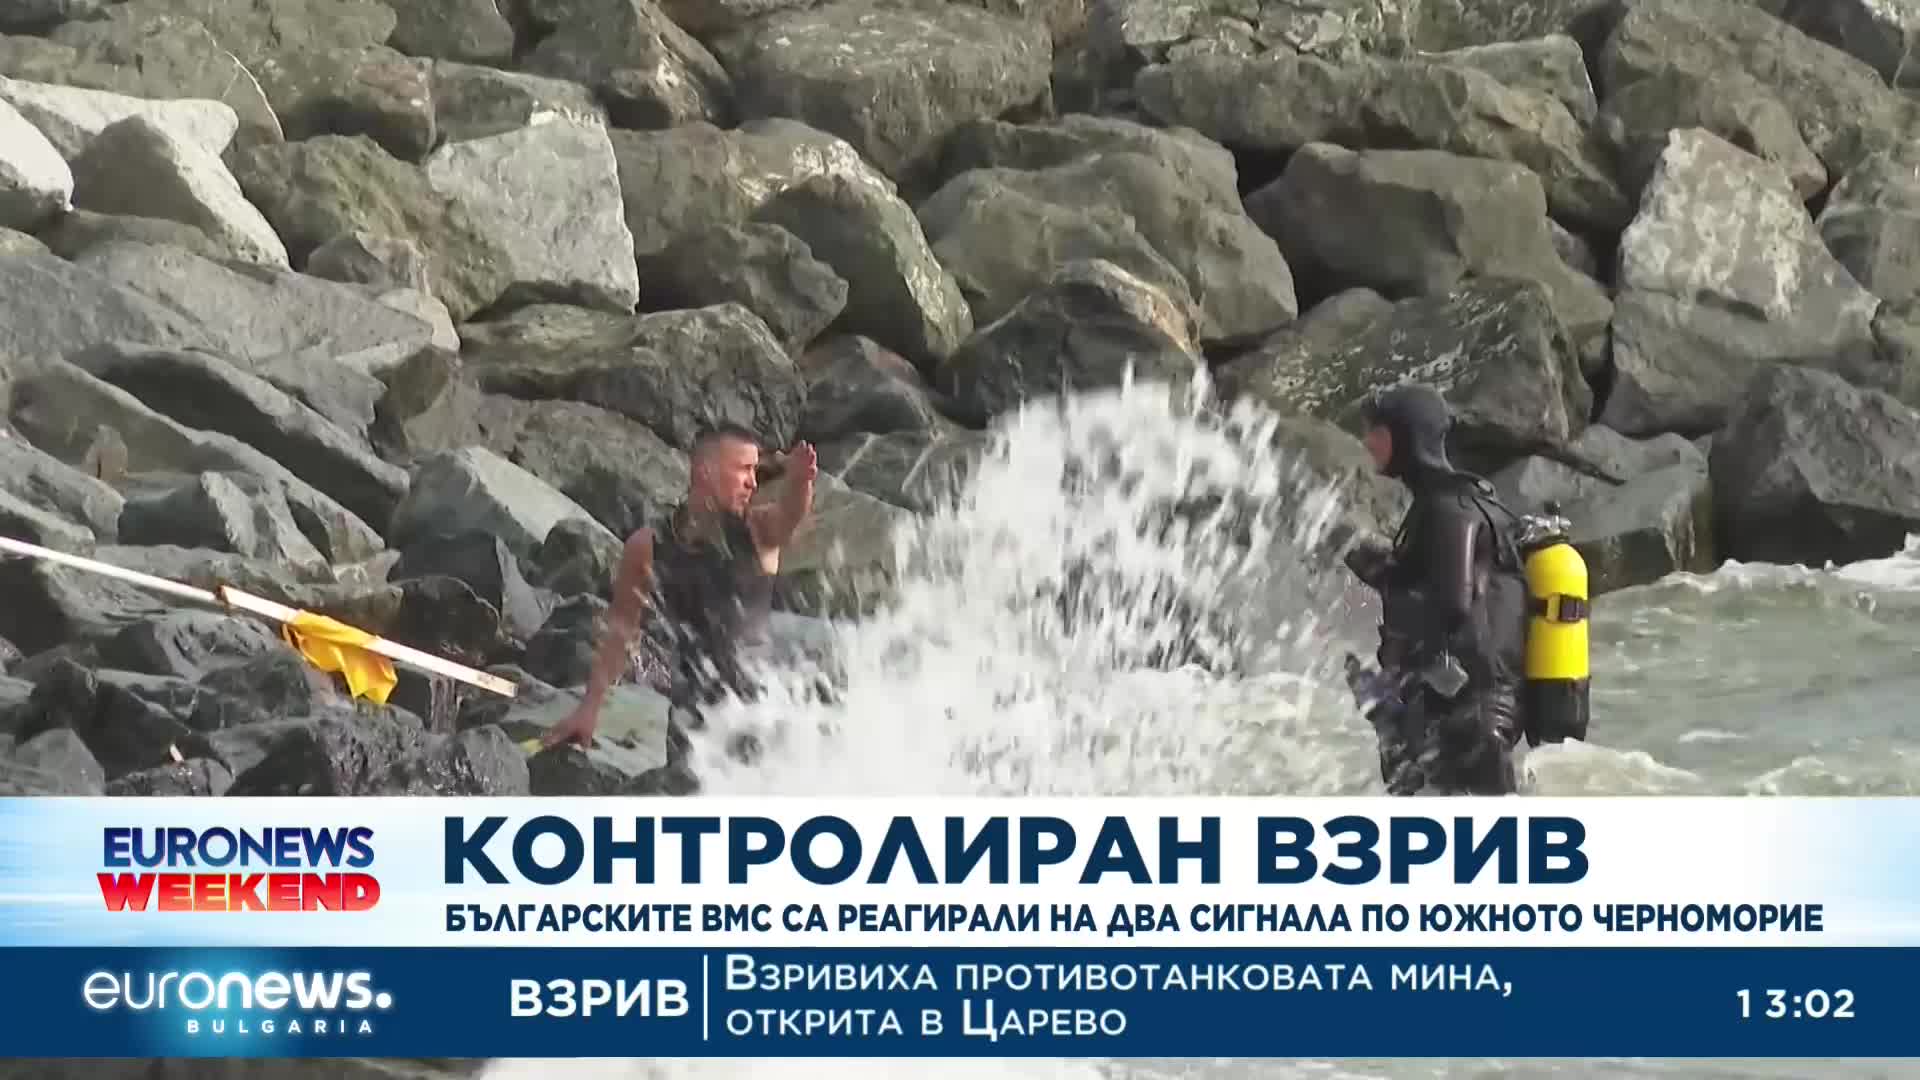 Откритата на плажа в Царево противотанкова мина беше взривена